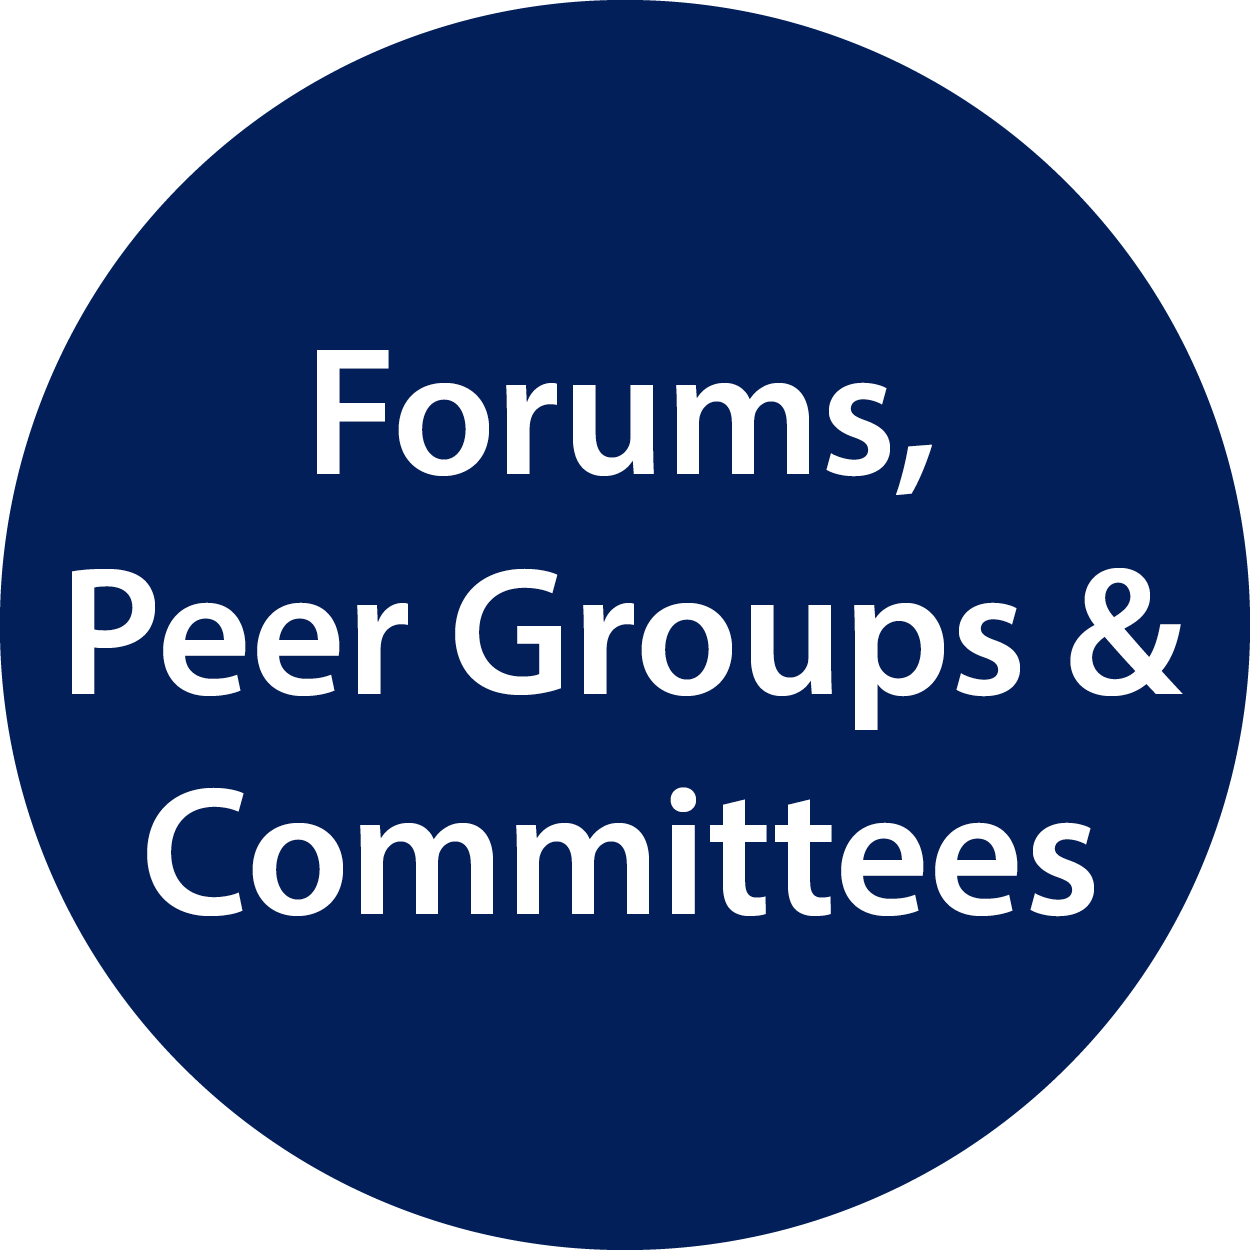 Forums, peer groups & committees